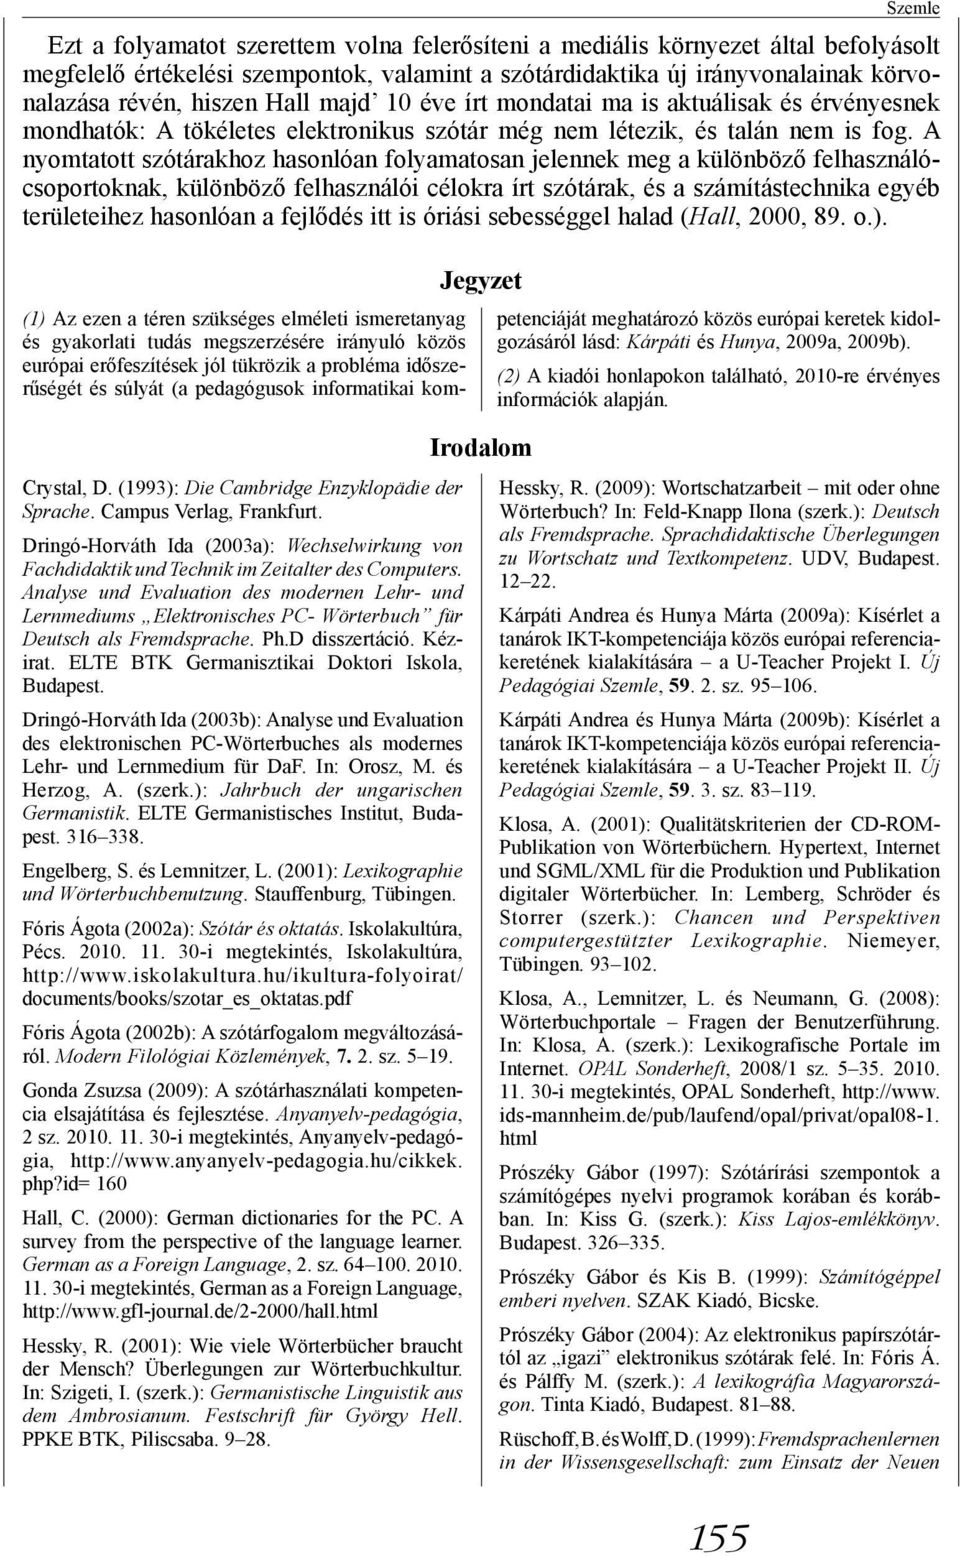 Dringó-Horváth Ida (2003b): Analyse und Evaluation des elektronischen PC-Wörterbuches als modernes Lehr- und Lernmedium für DaF. In: Orosz, M. és Herzog, A. (szerk.